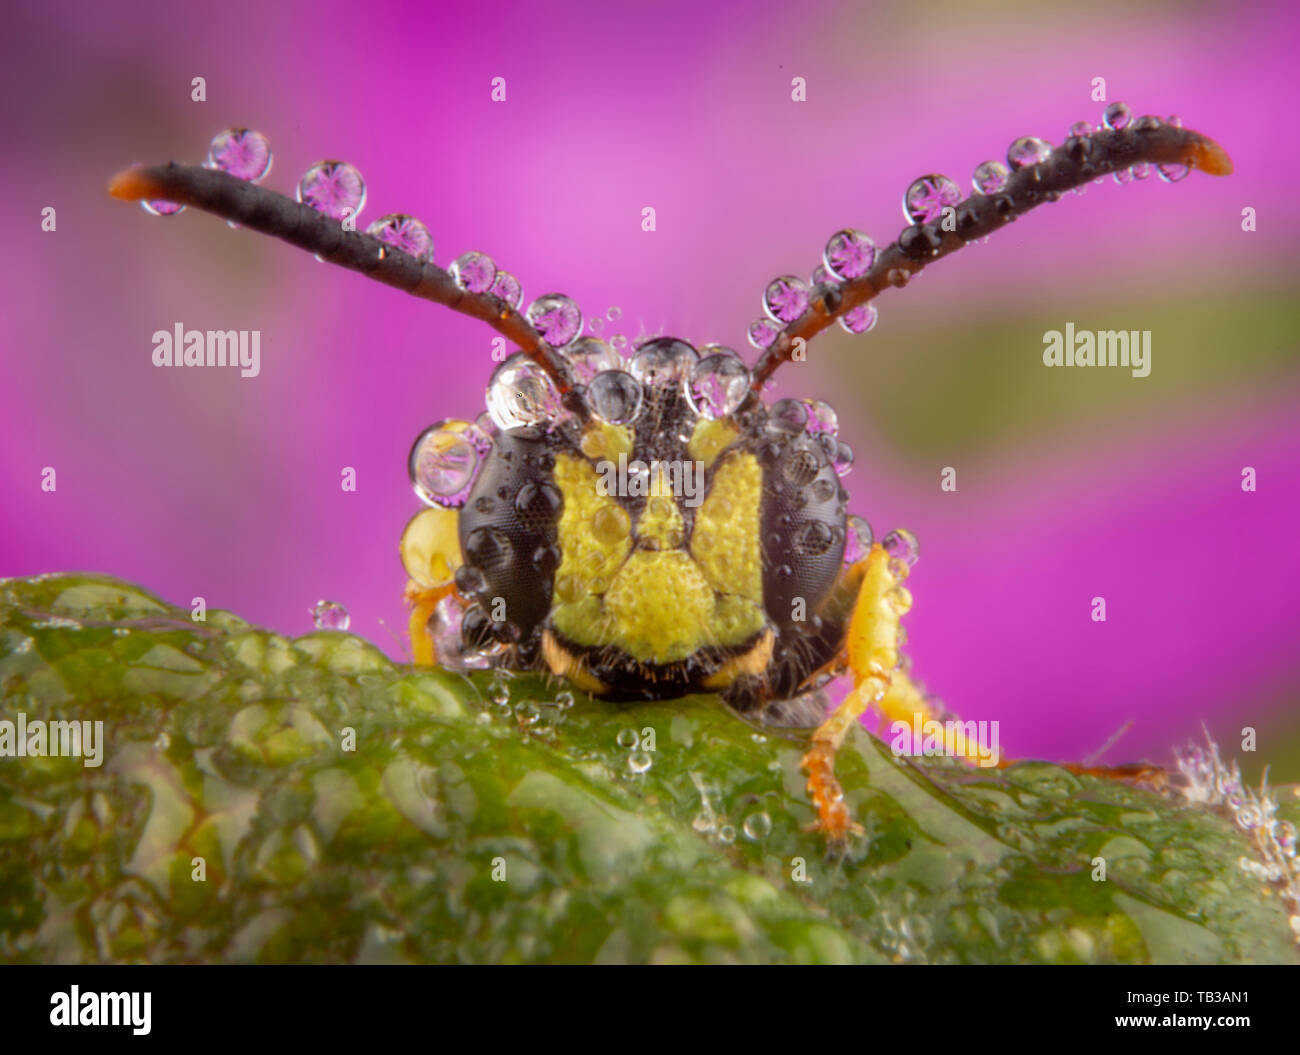 Poco mosca posando con unas pocas gotas de lluvia en su antennaes Foto de stock